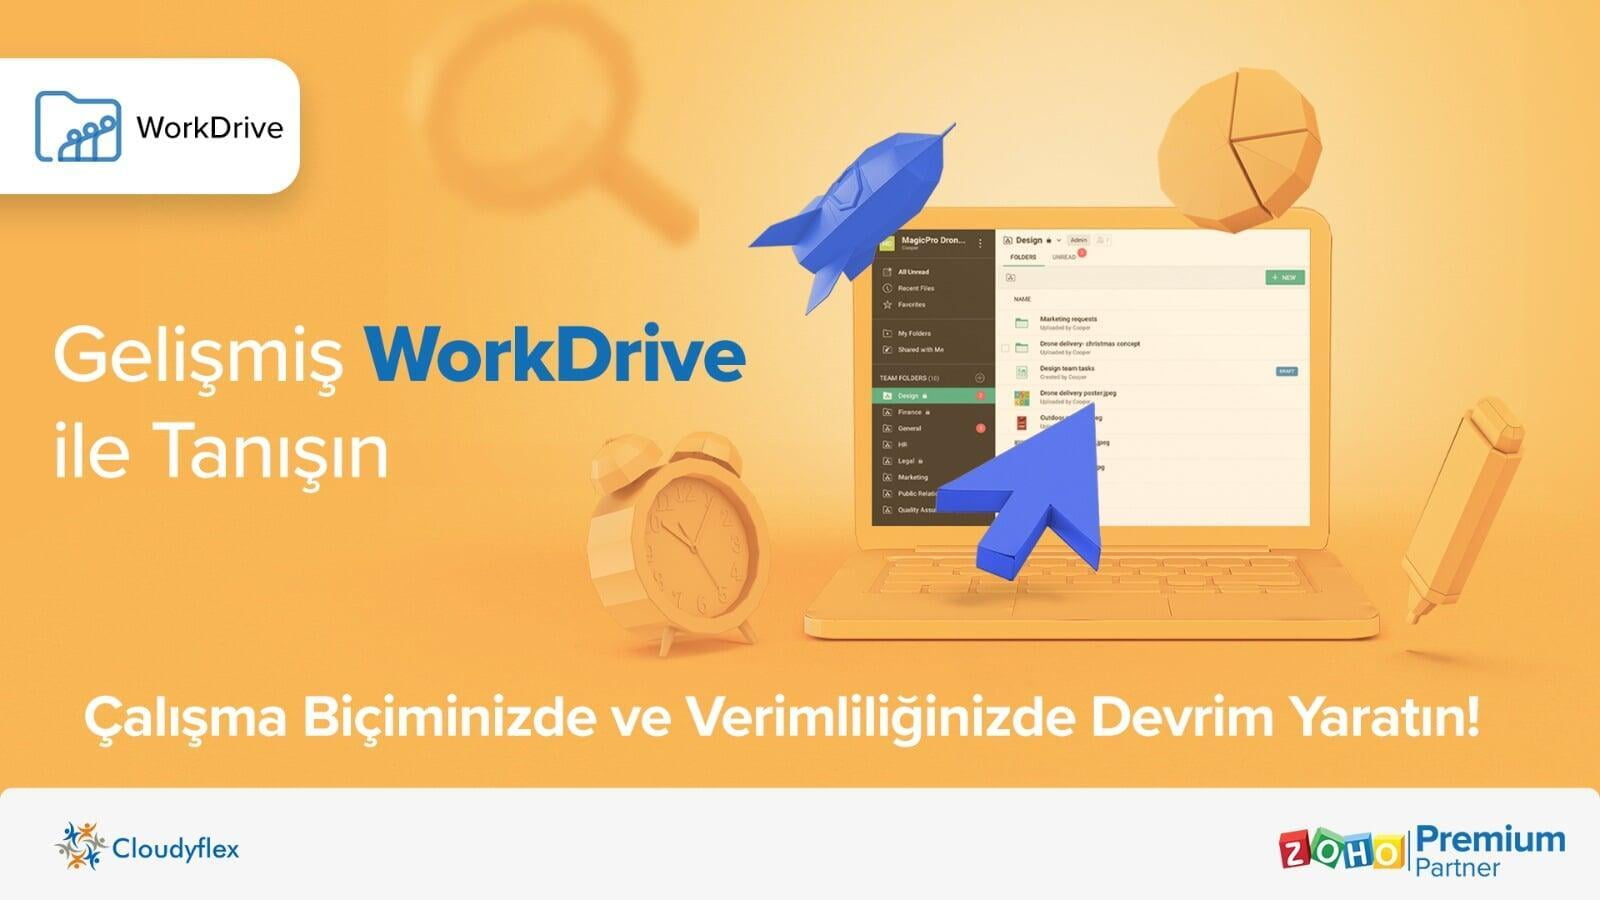 Gelişmiş WorkDrive ile Tanışın: Çalışma Biçiminizde ve Verimliliğinizde Devrim Yaratın!